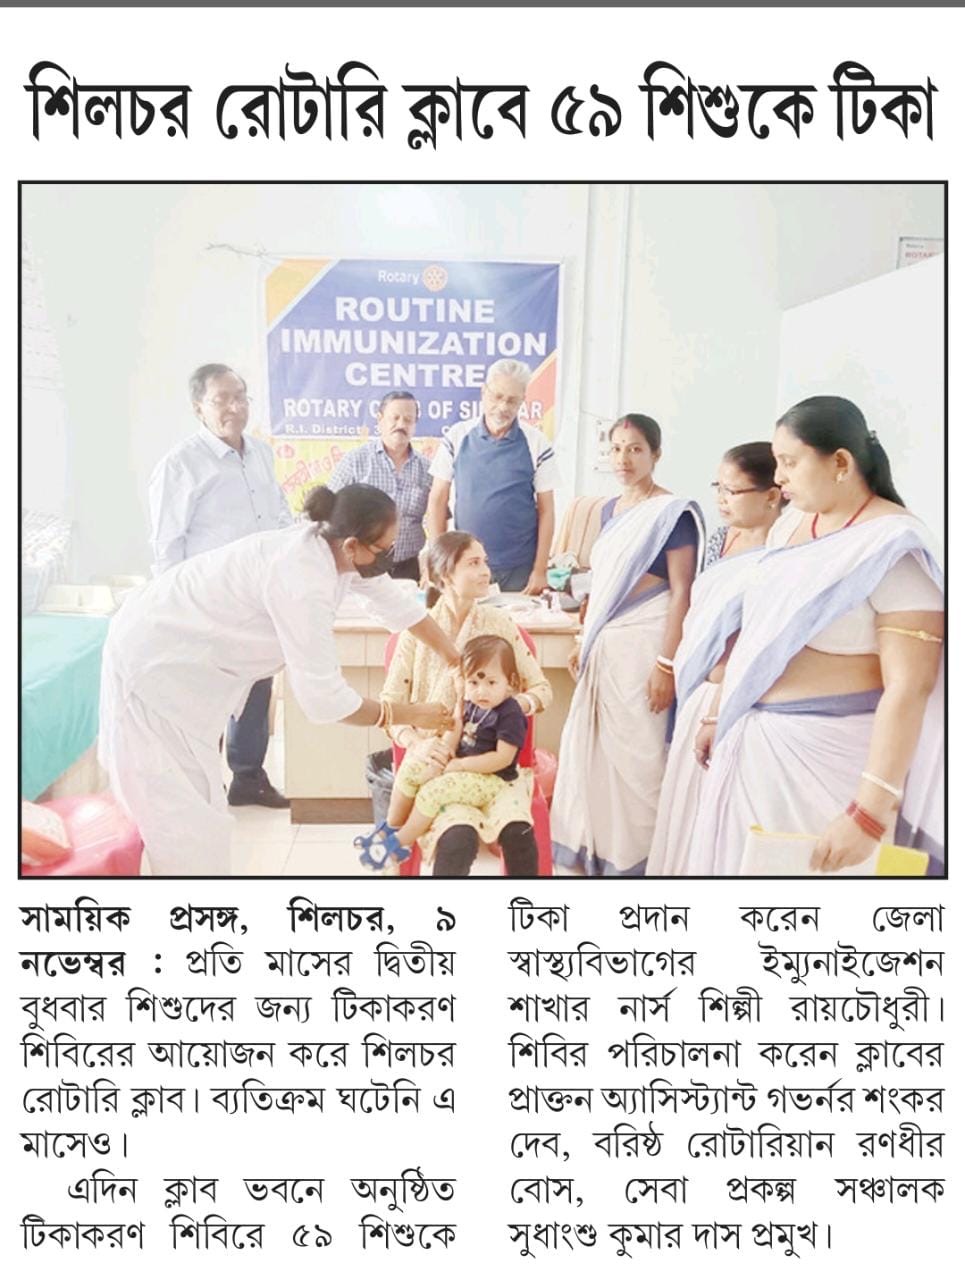 Permanent Routine Immunisation Centre